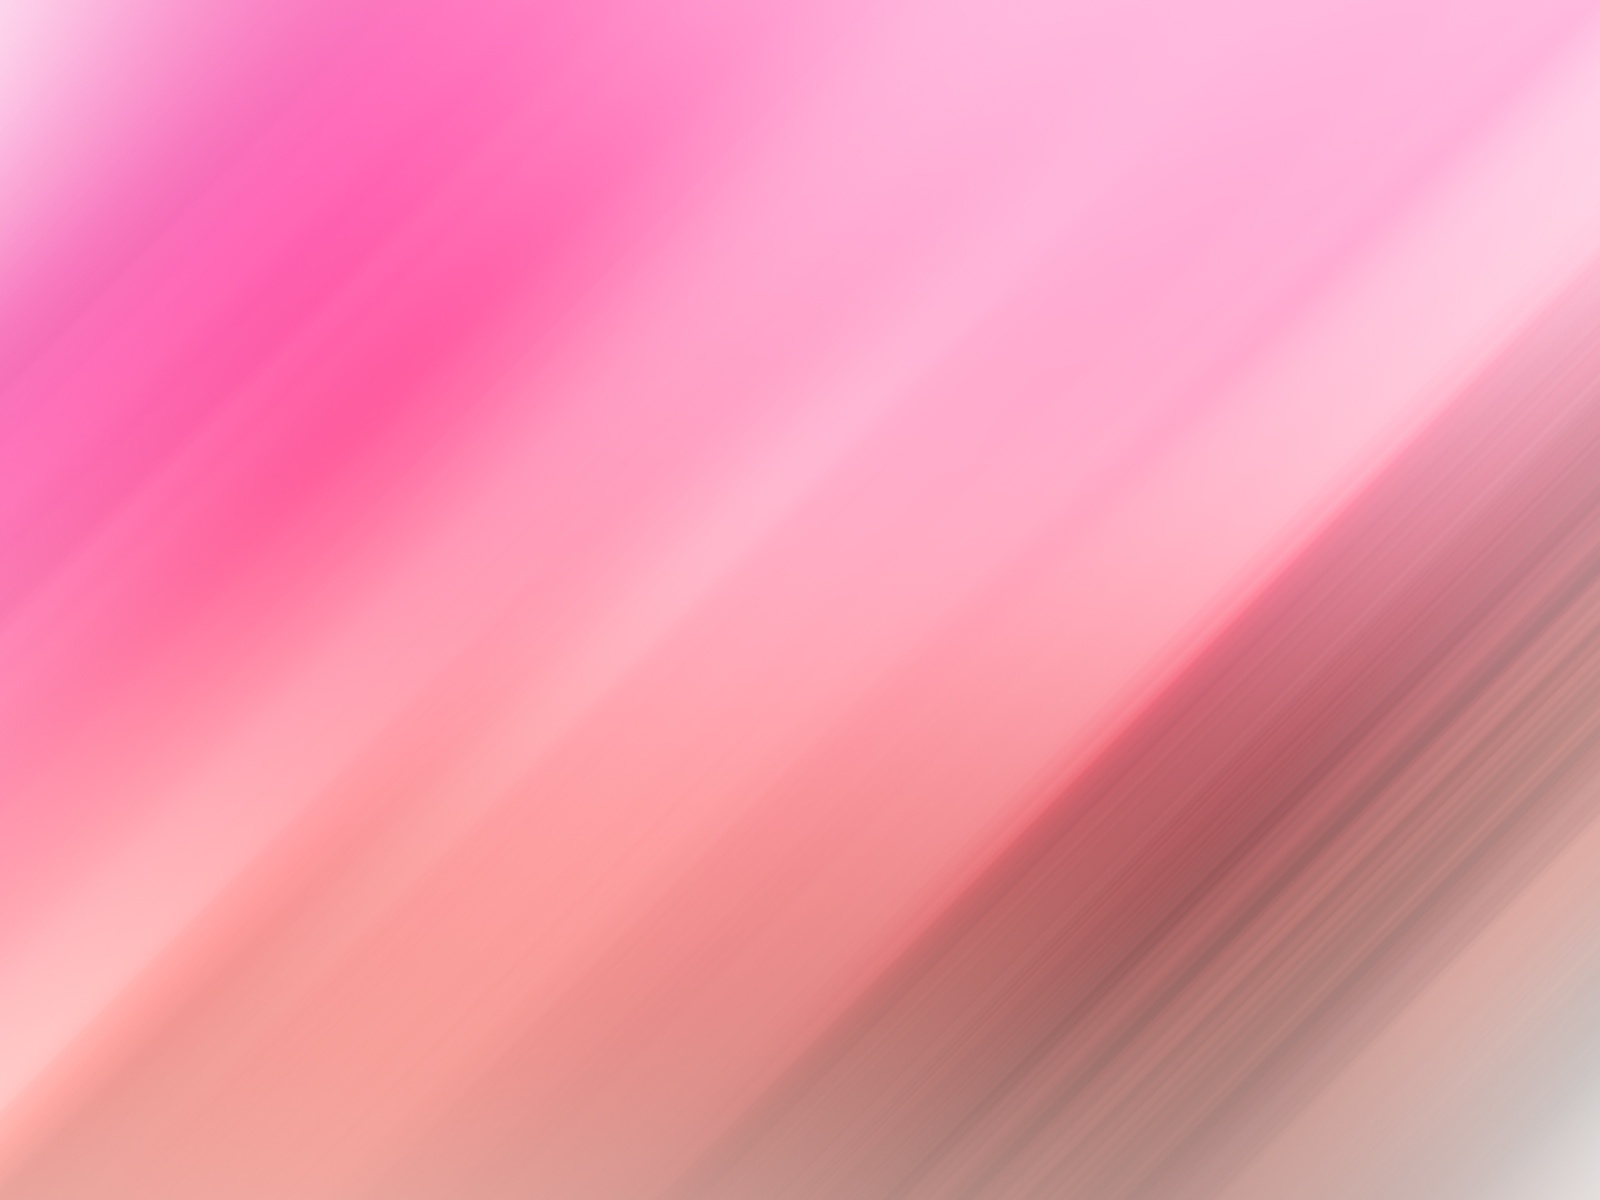 Pink Satin Wallpaper - WallpaperSafari.